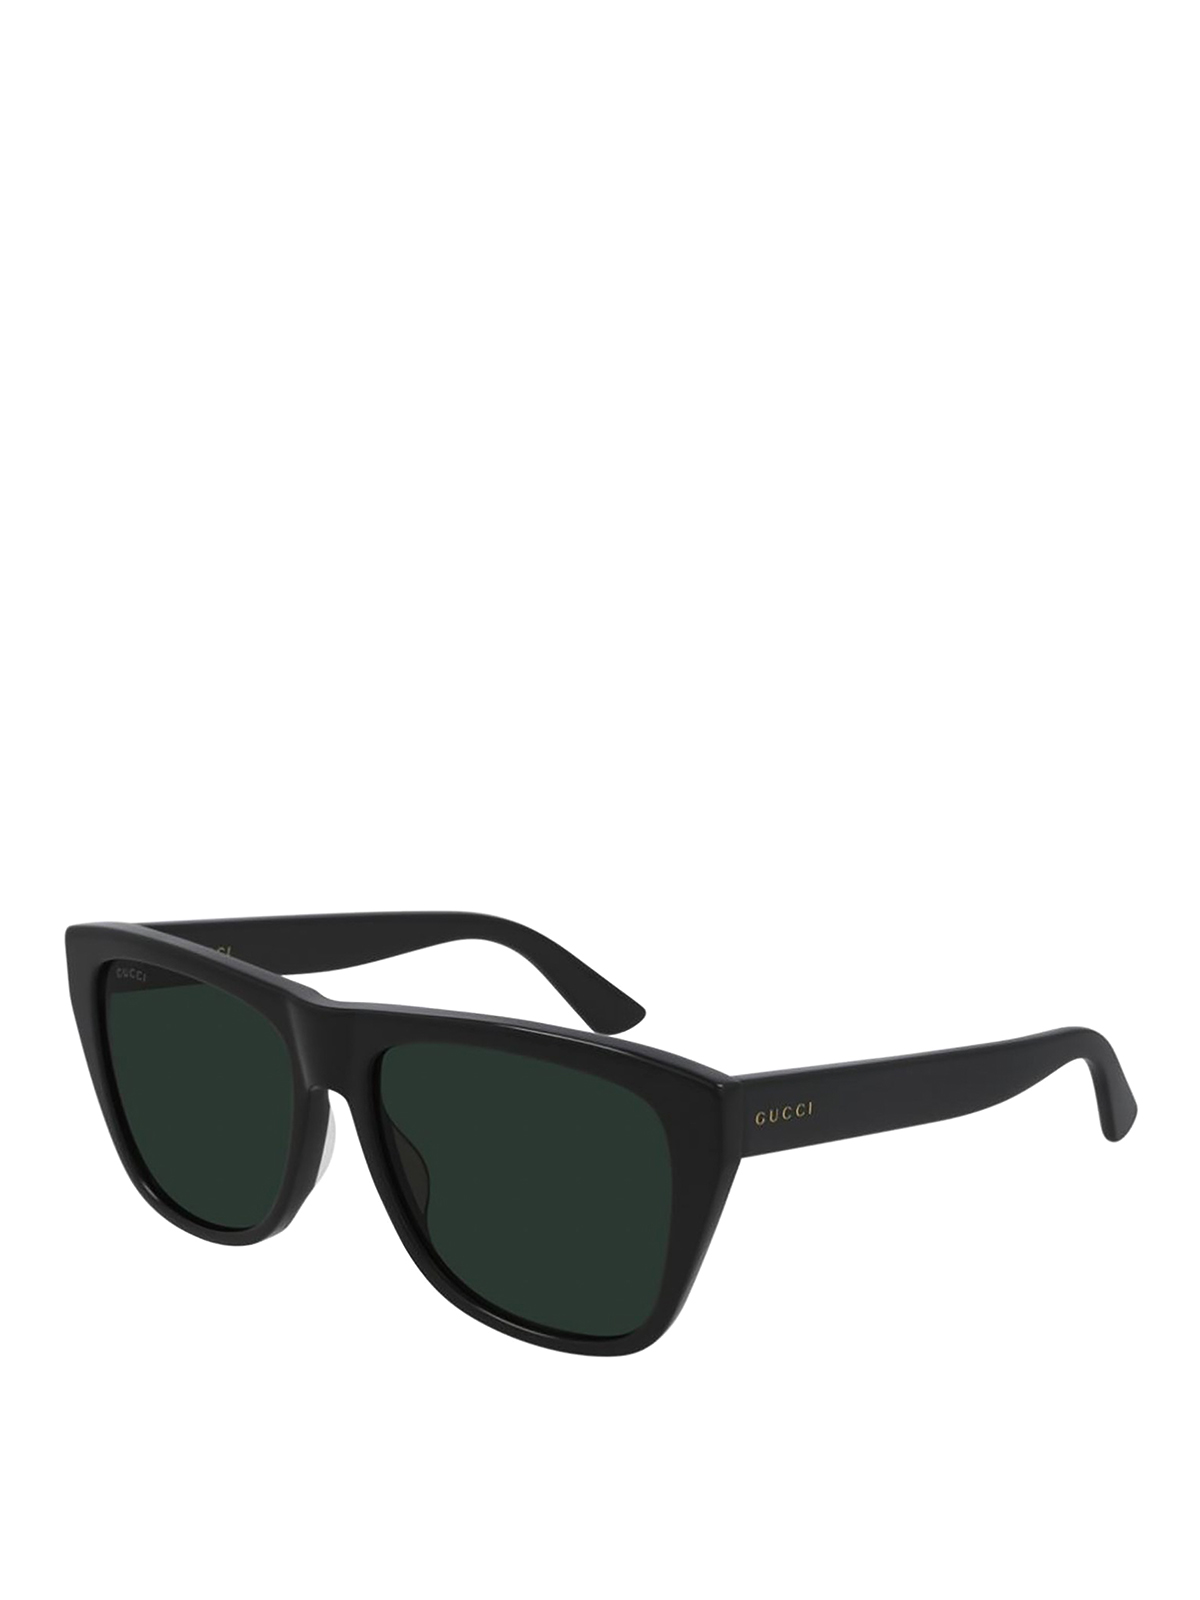 Gucci Total Black Sunglasses